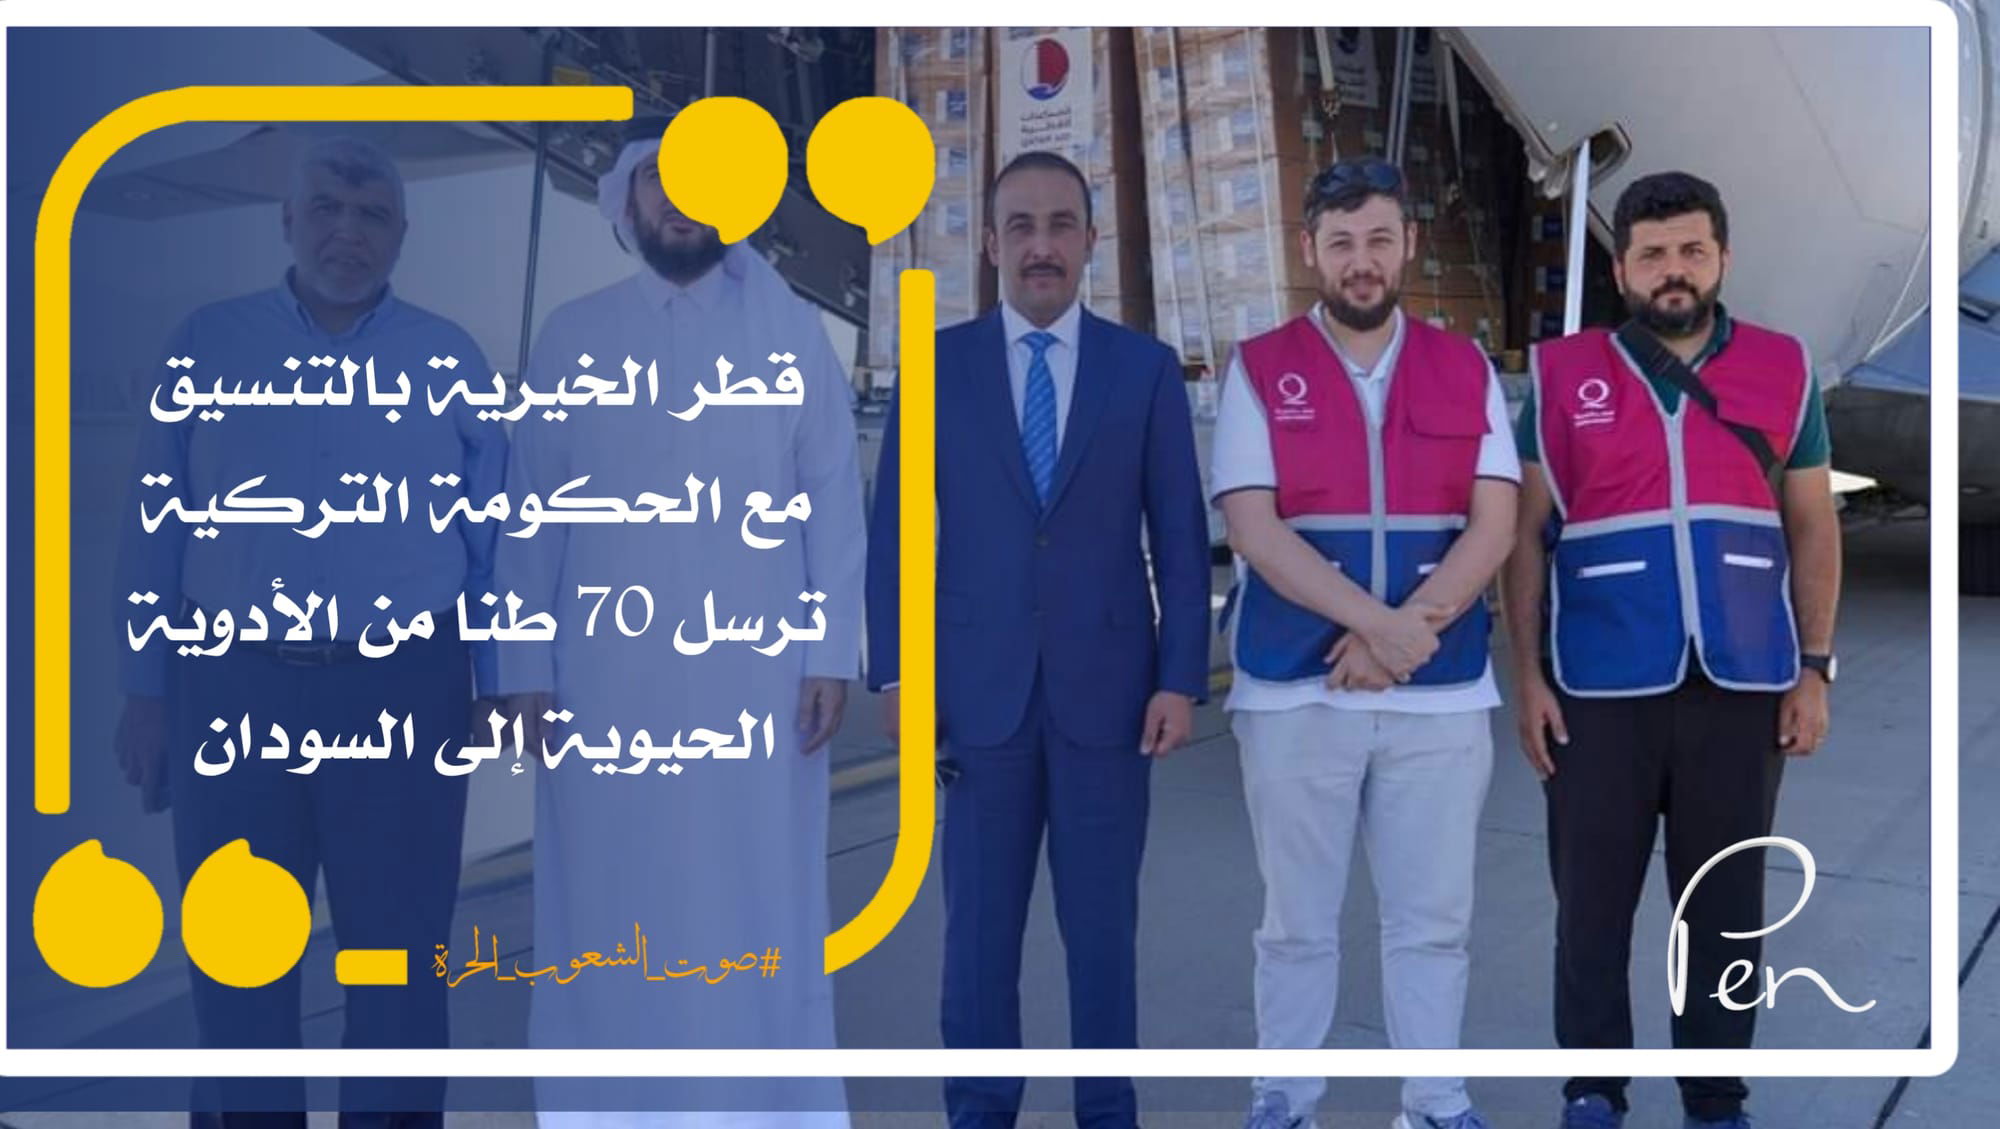 قطر الخيرية بالتنسيق مع الحكومة التركية ترسل 70 طنا من الأدوية الحيوية إلى السودان